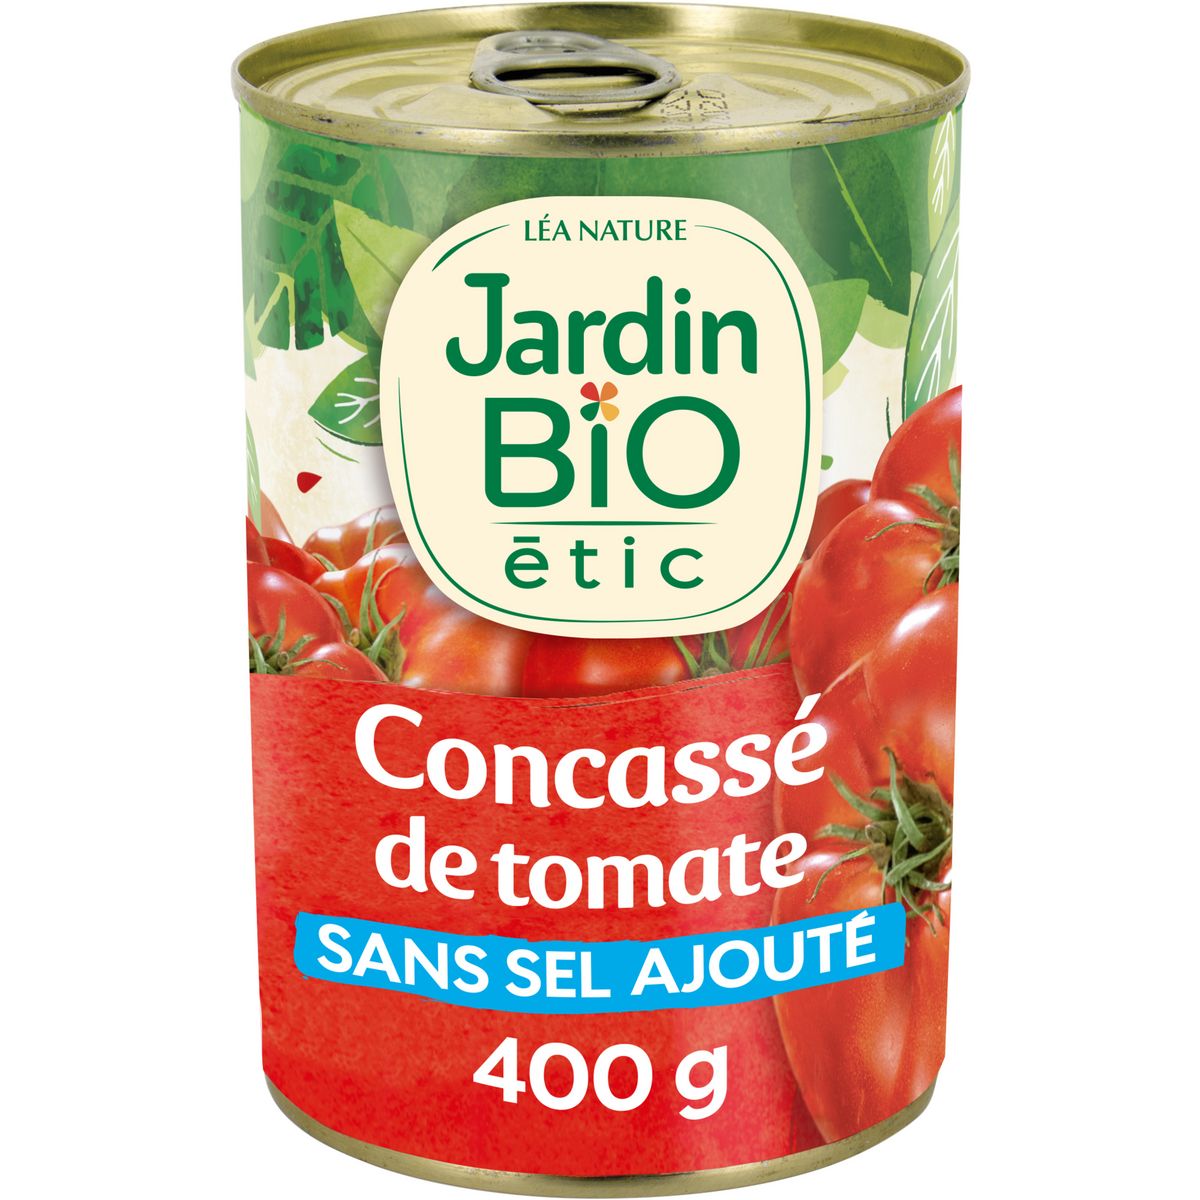 JARDIN BIO ETIC Concassé de tomates fraîches au jus sans sel ajouté 400g